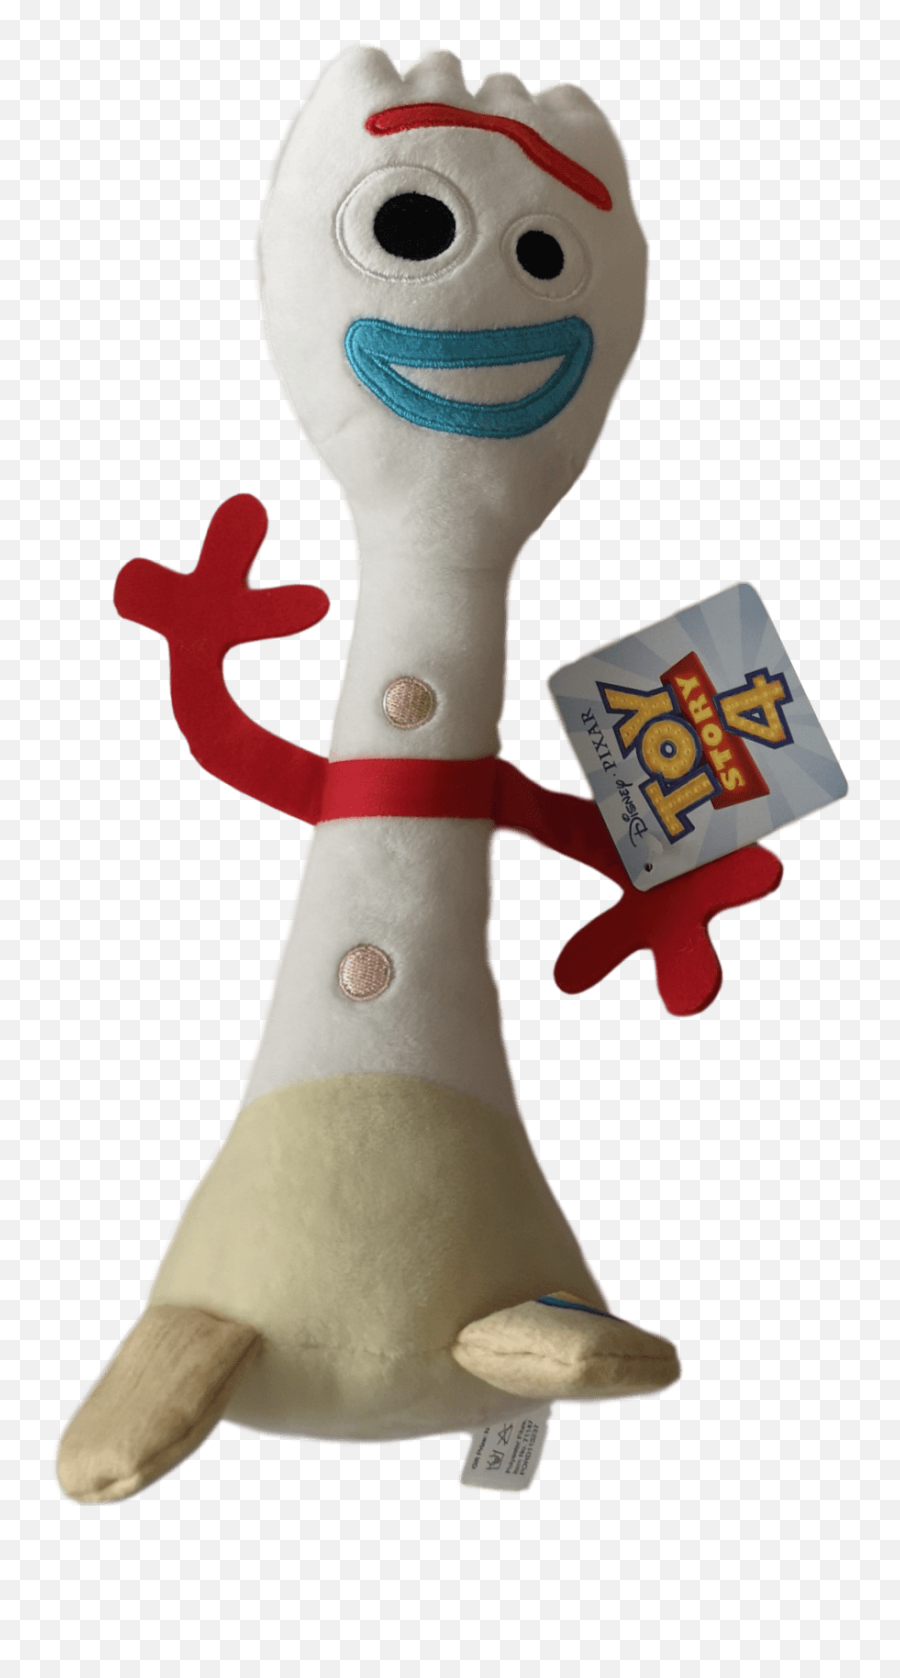 Popular Toy Story 4 Forky Png Image - Toy Story 4 Uk Plush Forky Emoji,Forky Png